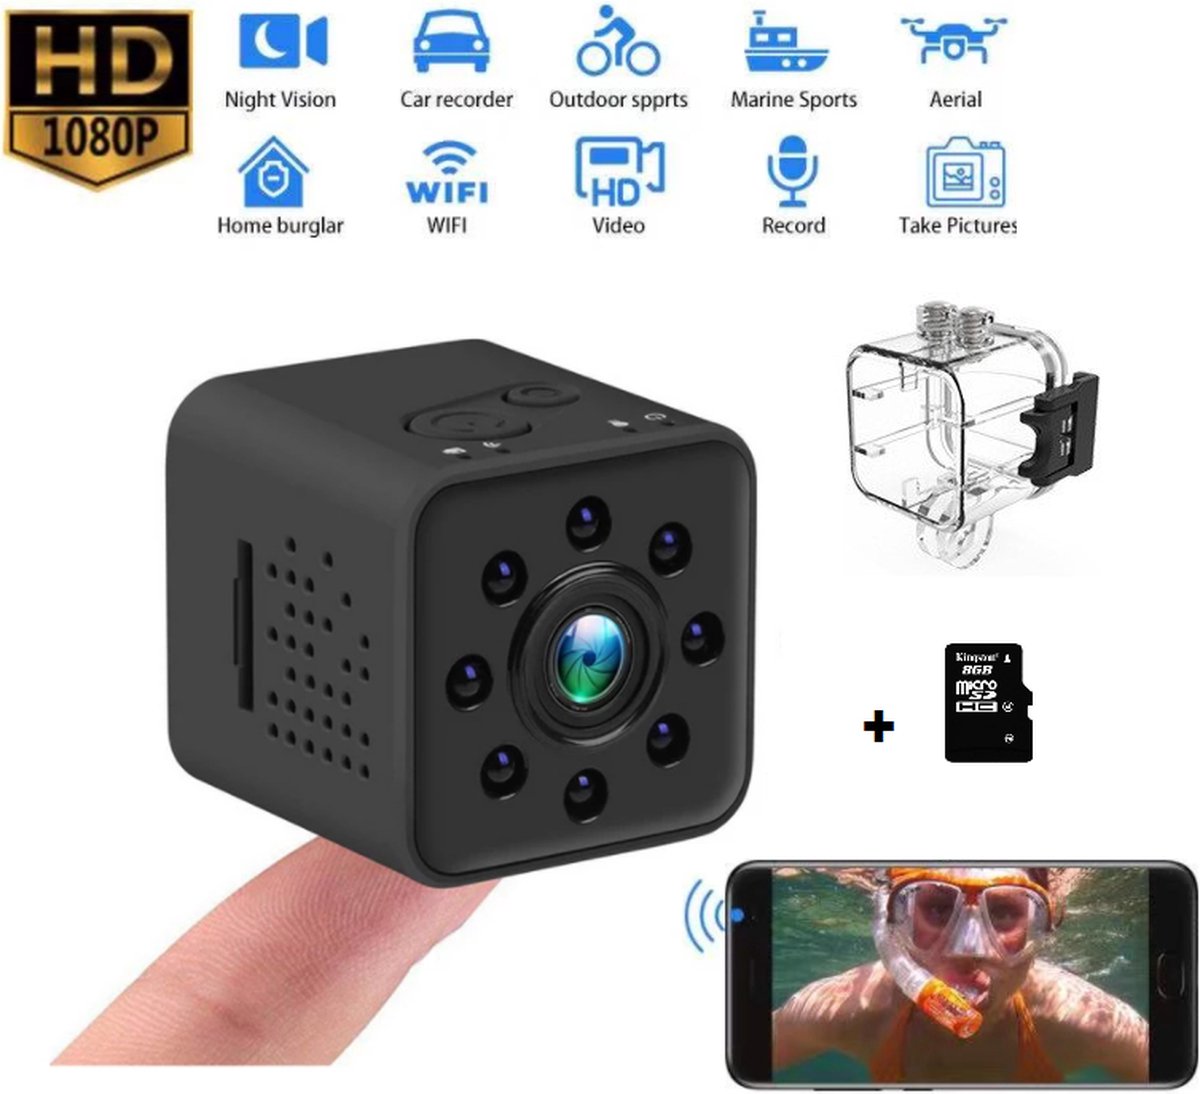 Caméra sport HD avec boîtier étanche - Vision nocturne infrarouge